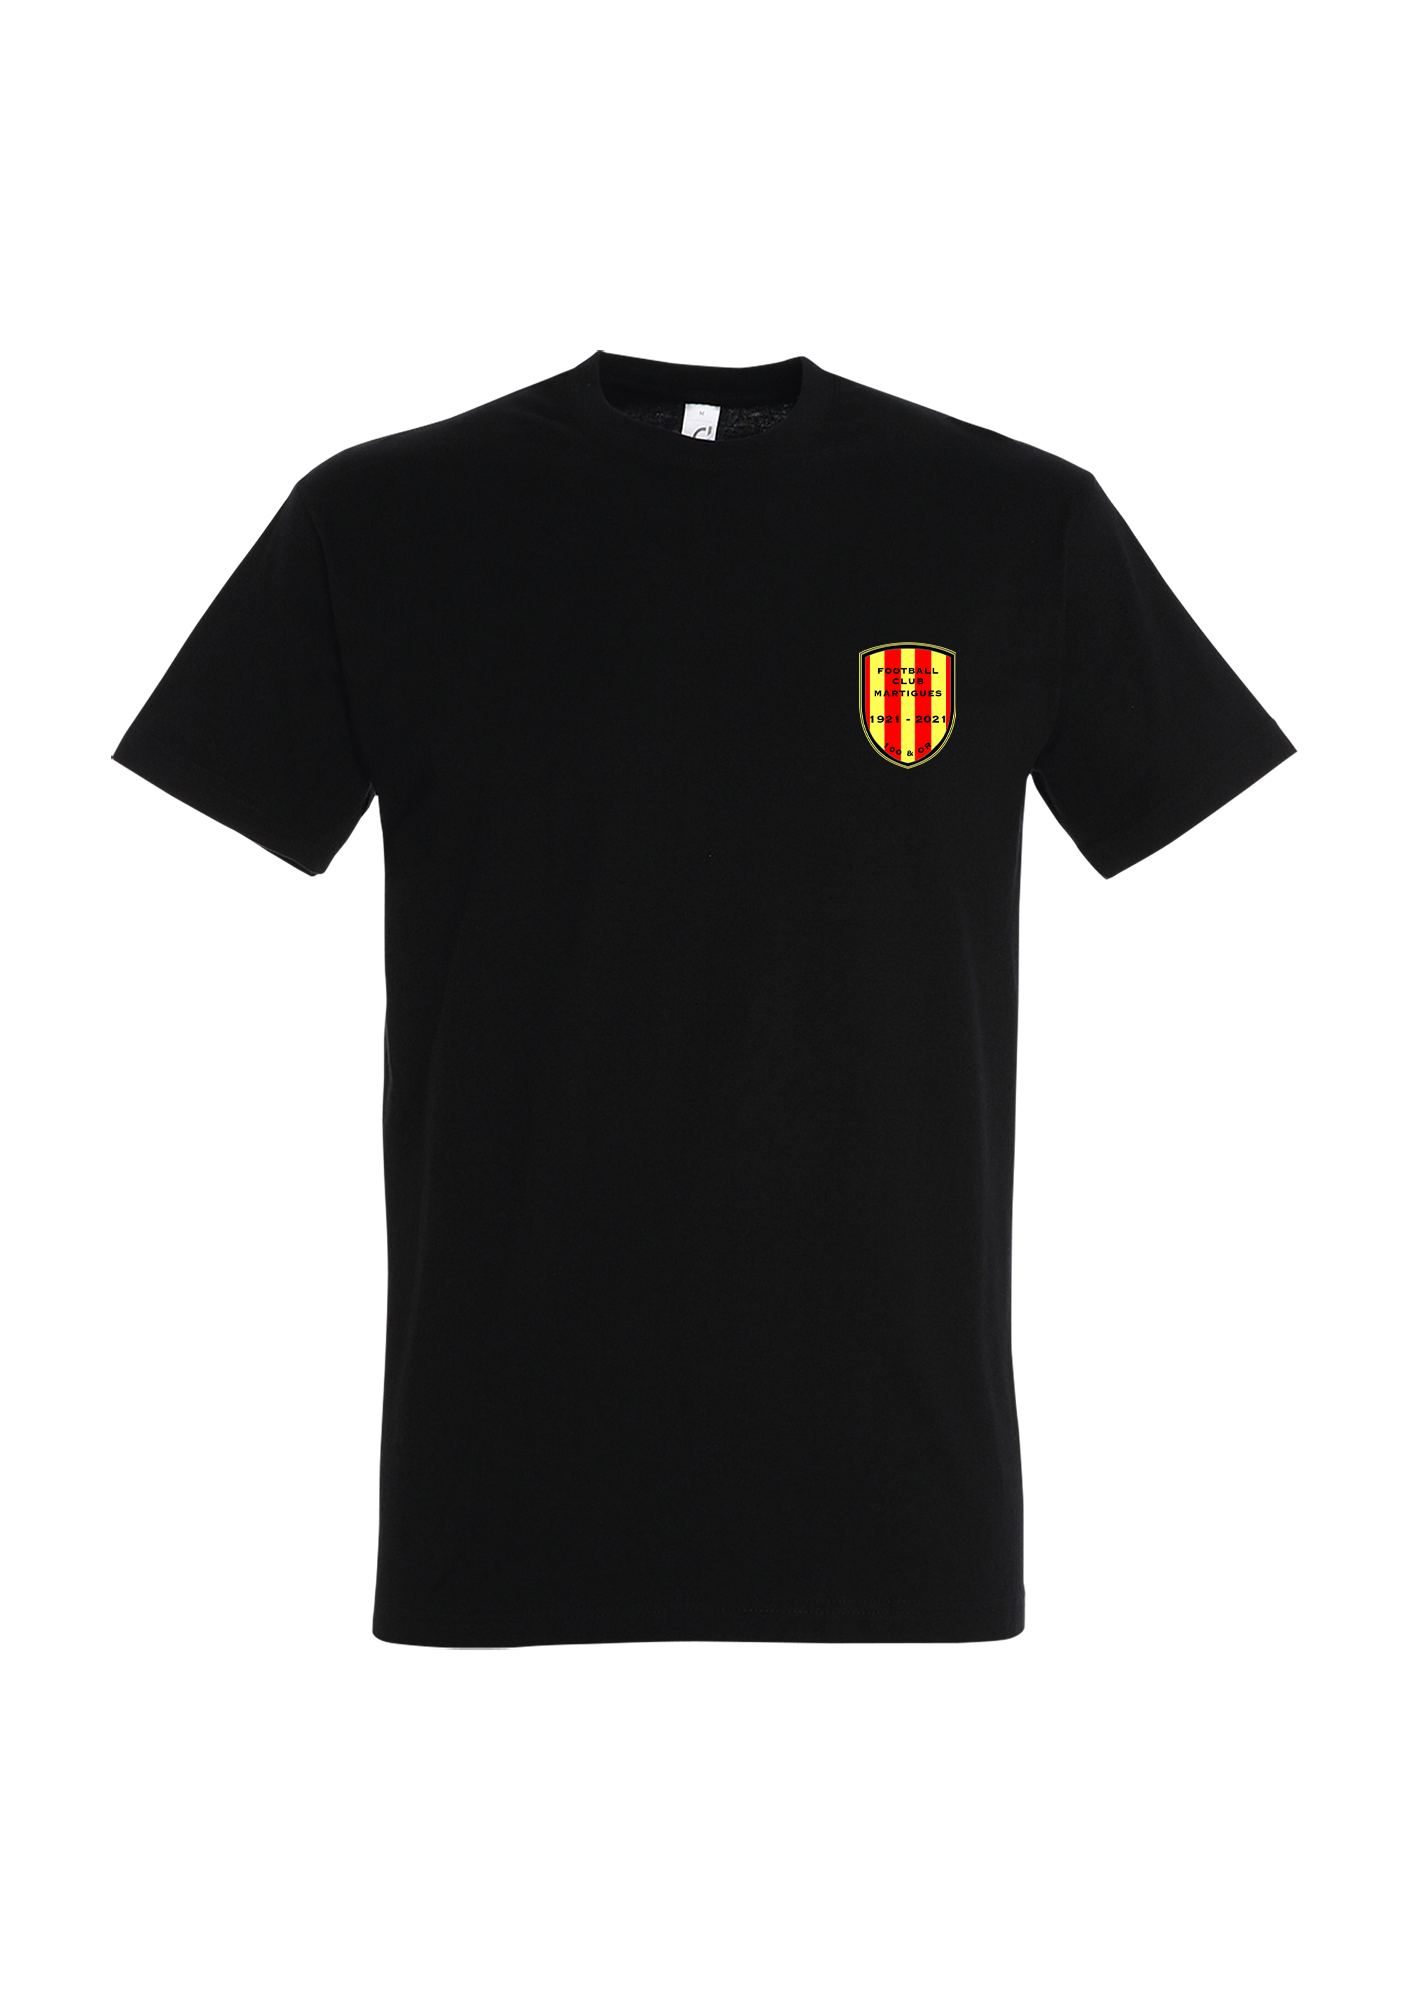 T-shirt Homme premium "100 et Or" Noir - pn11500309A